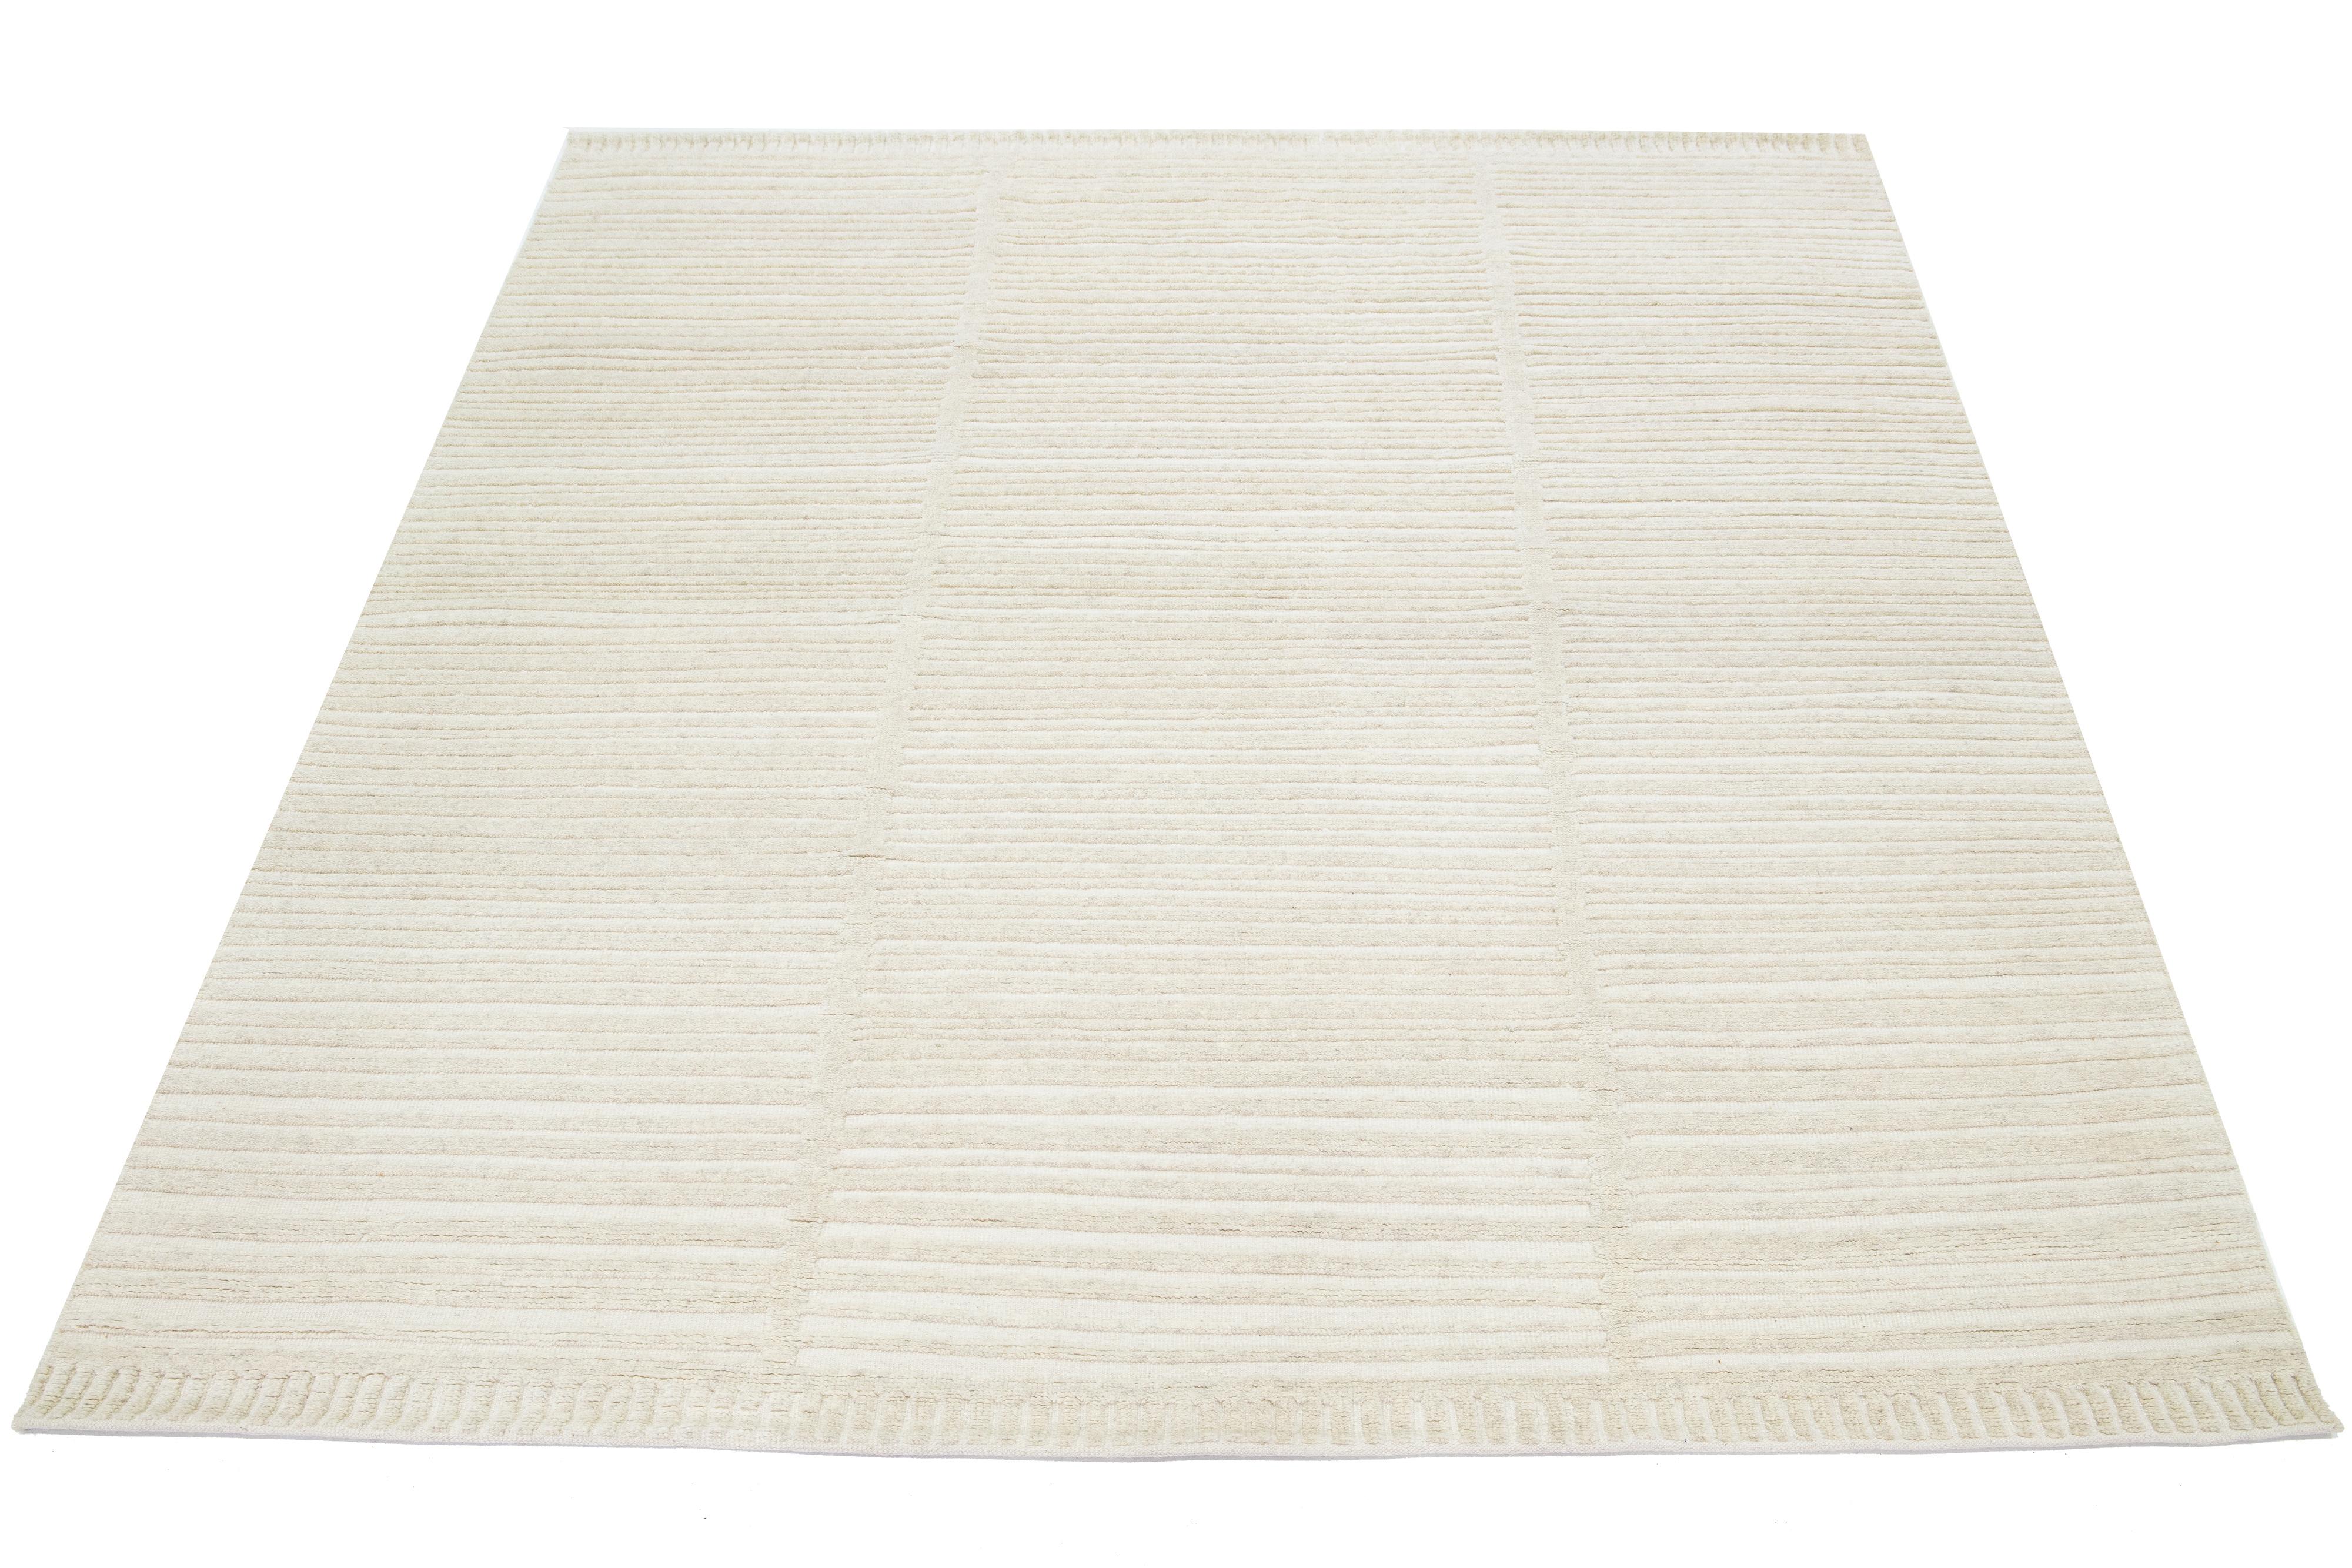 Ce tapis en laine de style marocain est noué à la main et présente un magnifique design moderne avec un champ ivoire naturel. Il présente un superbe motif rayé.

Ce tapis mesure 8' x 10'.